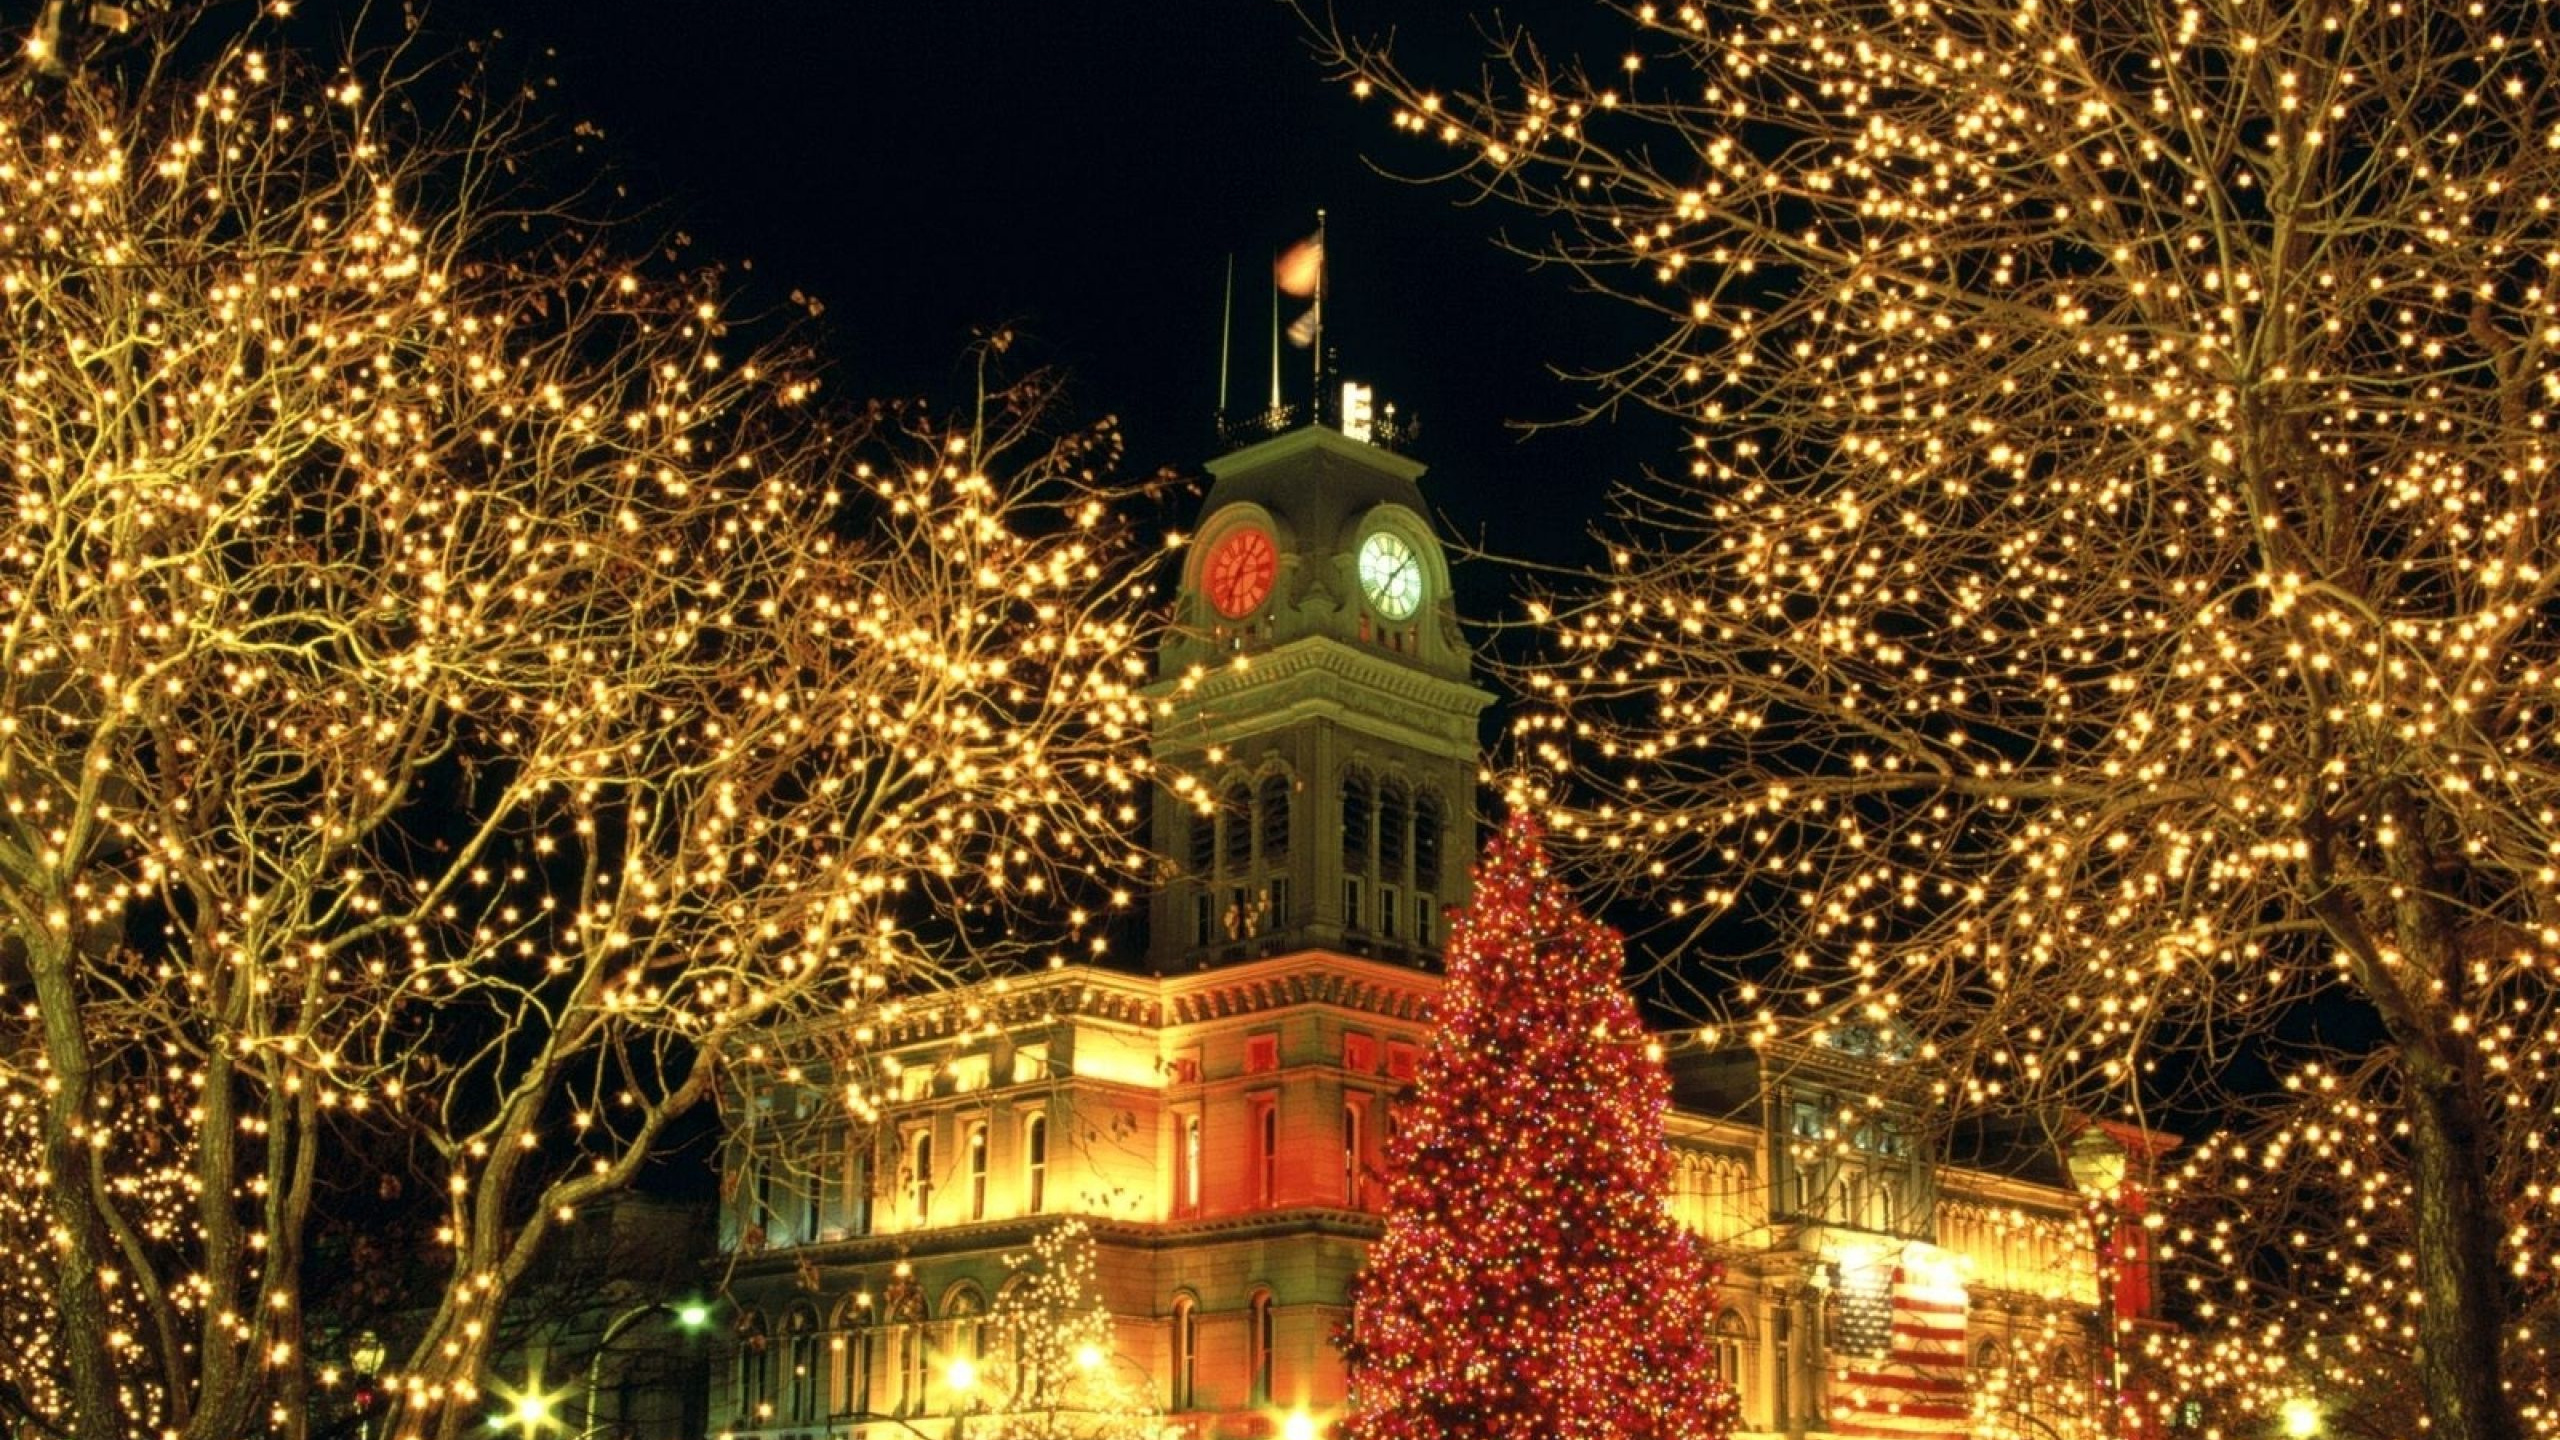 圣诞节那天, 圣诞彩灯, 圣诞树, 里程碑, 圣诞装饰 壁纸 2560x1440 允许